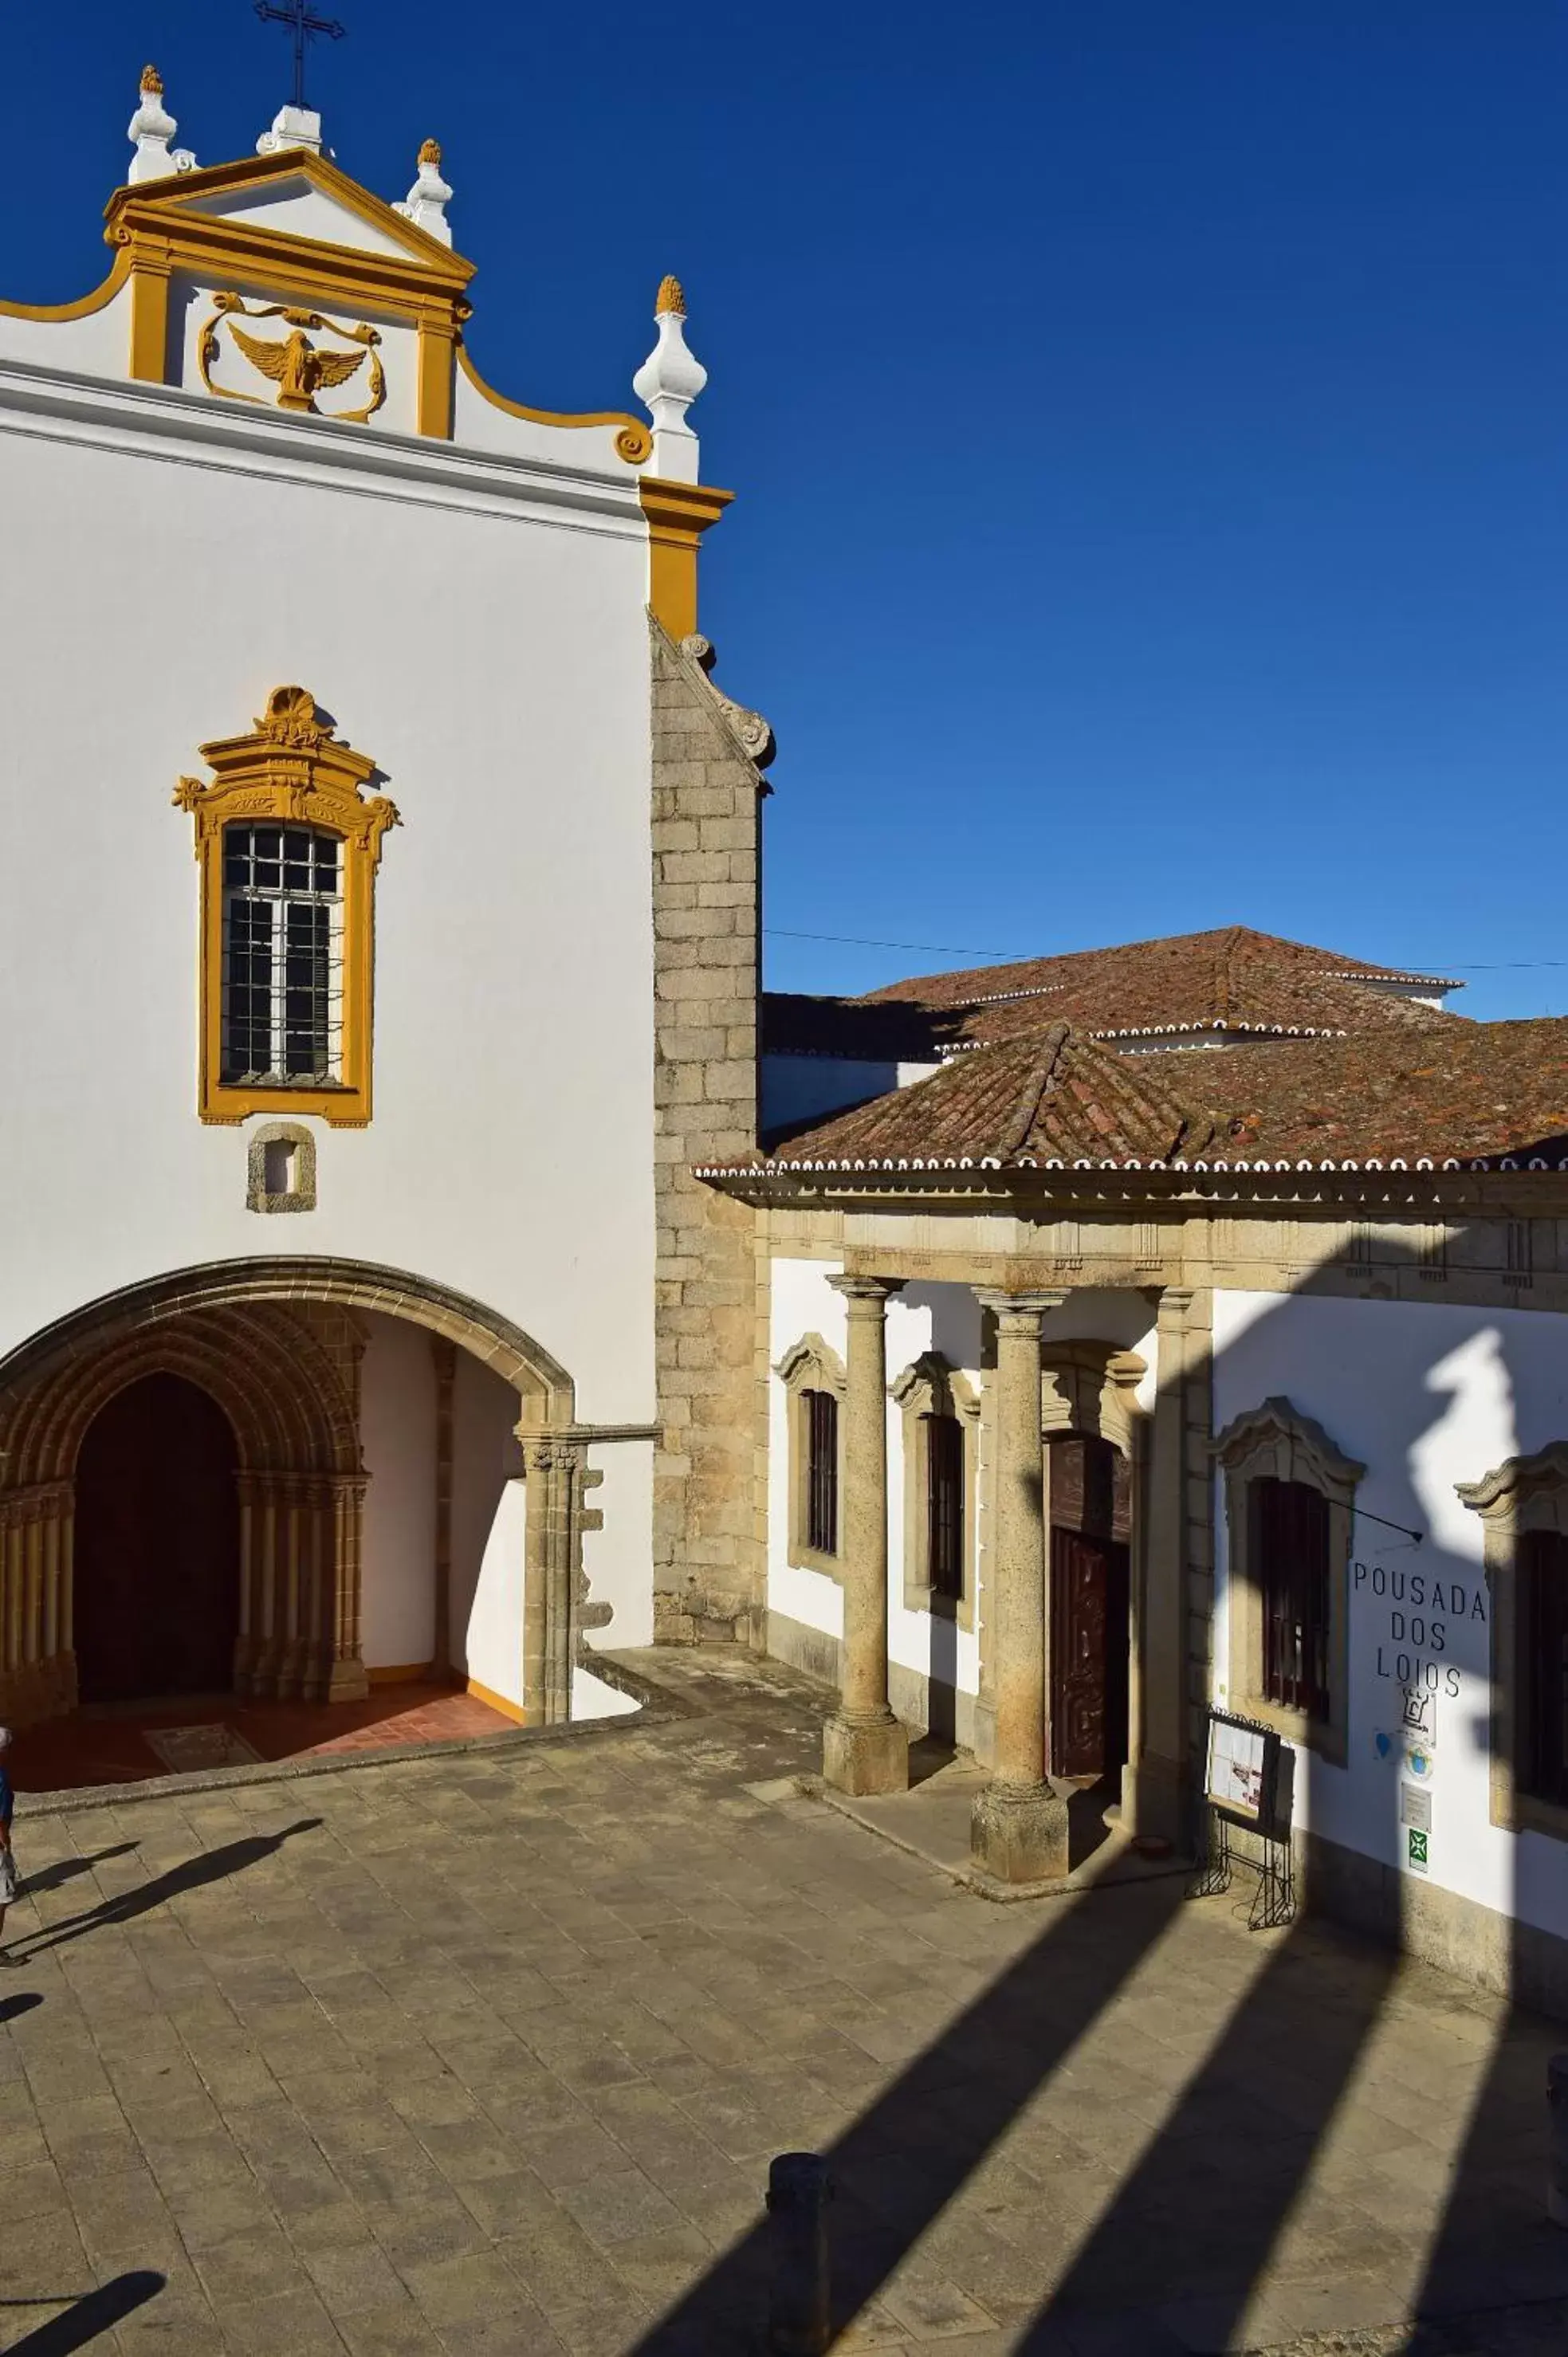 Facade/entrance, Property Building in Pousada Convento de Evora